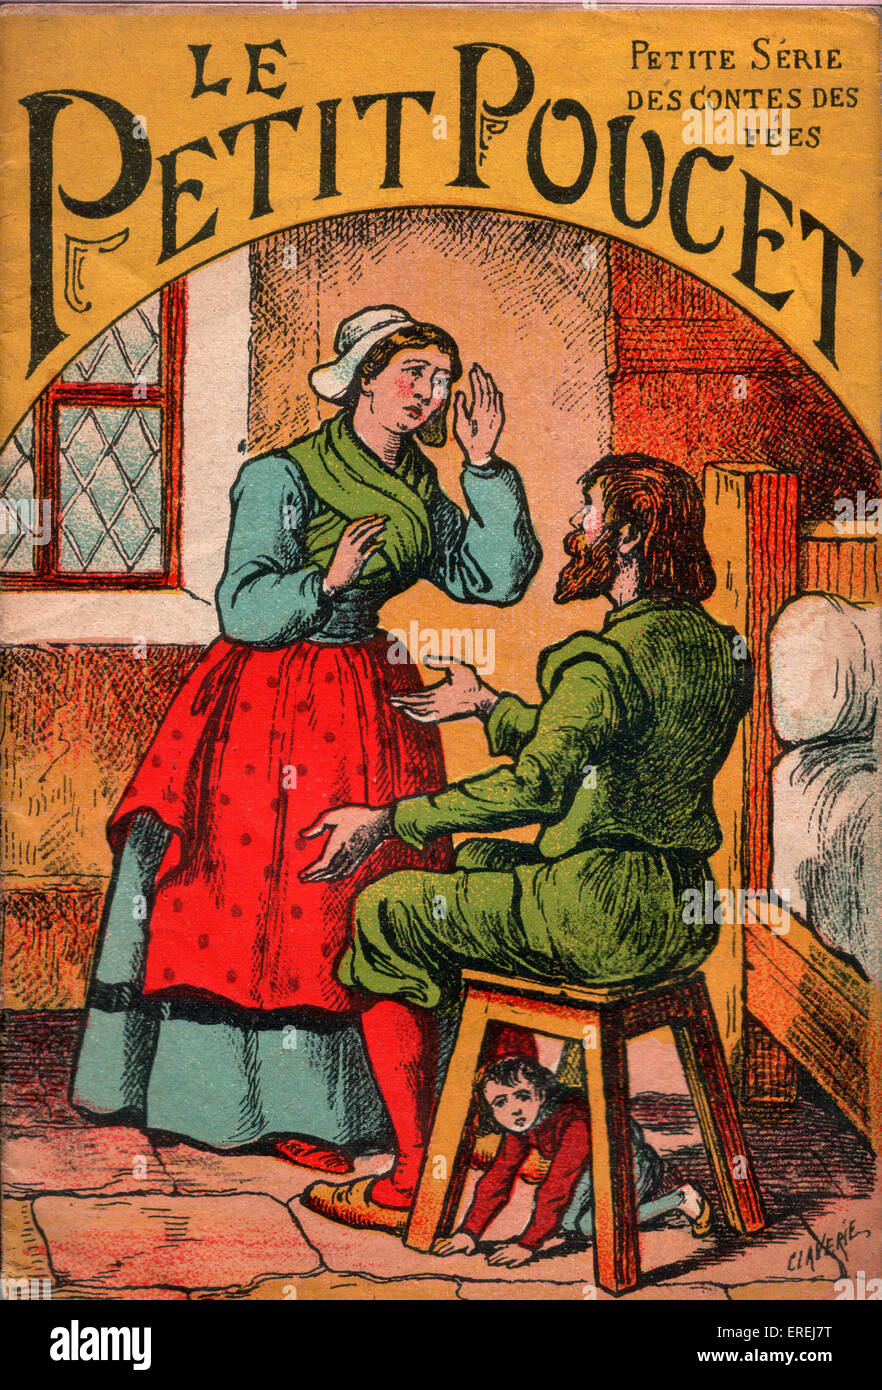 Couverture de l'édition française de Tom Pouce, c. 1913. Les parents sont déplorant leurs difficultés financières tandis que Tom se dissimule sous un Banque D'Images